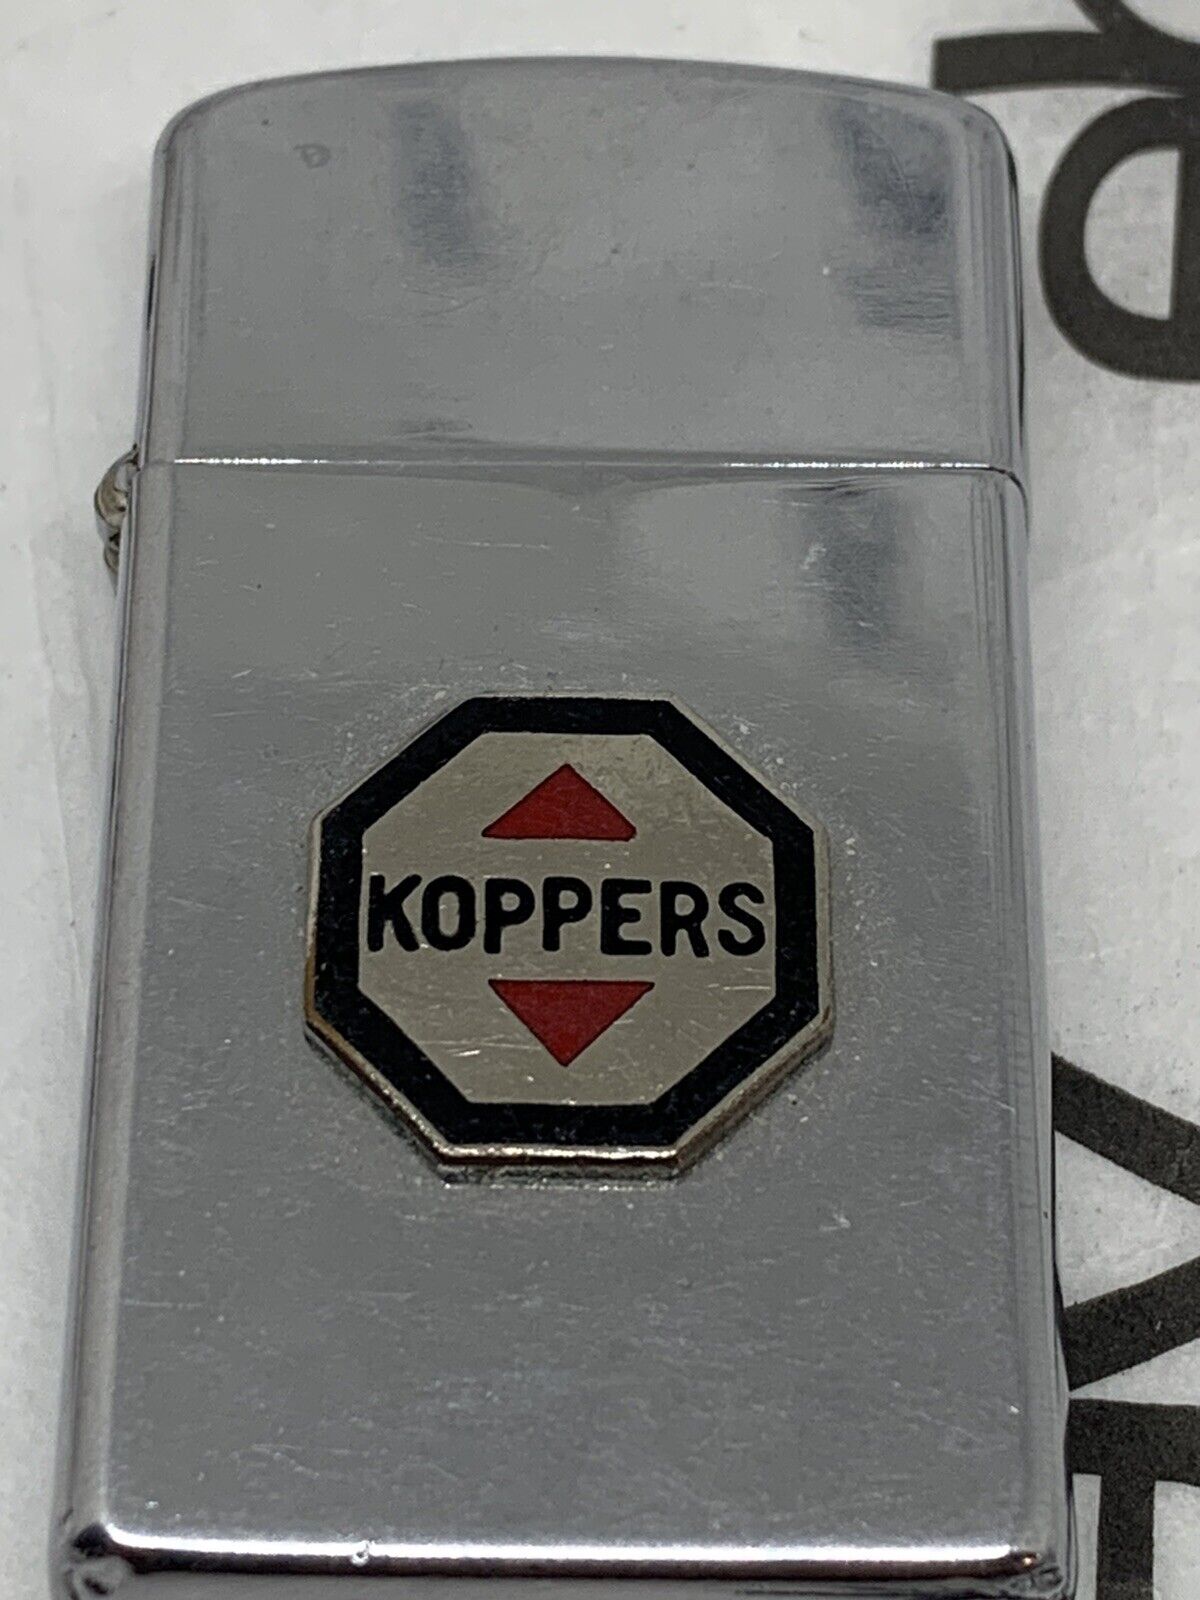 VTG 1965 Zippo Slim Lighter with KOPPERS Emblem